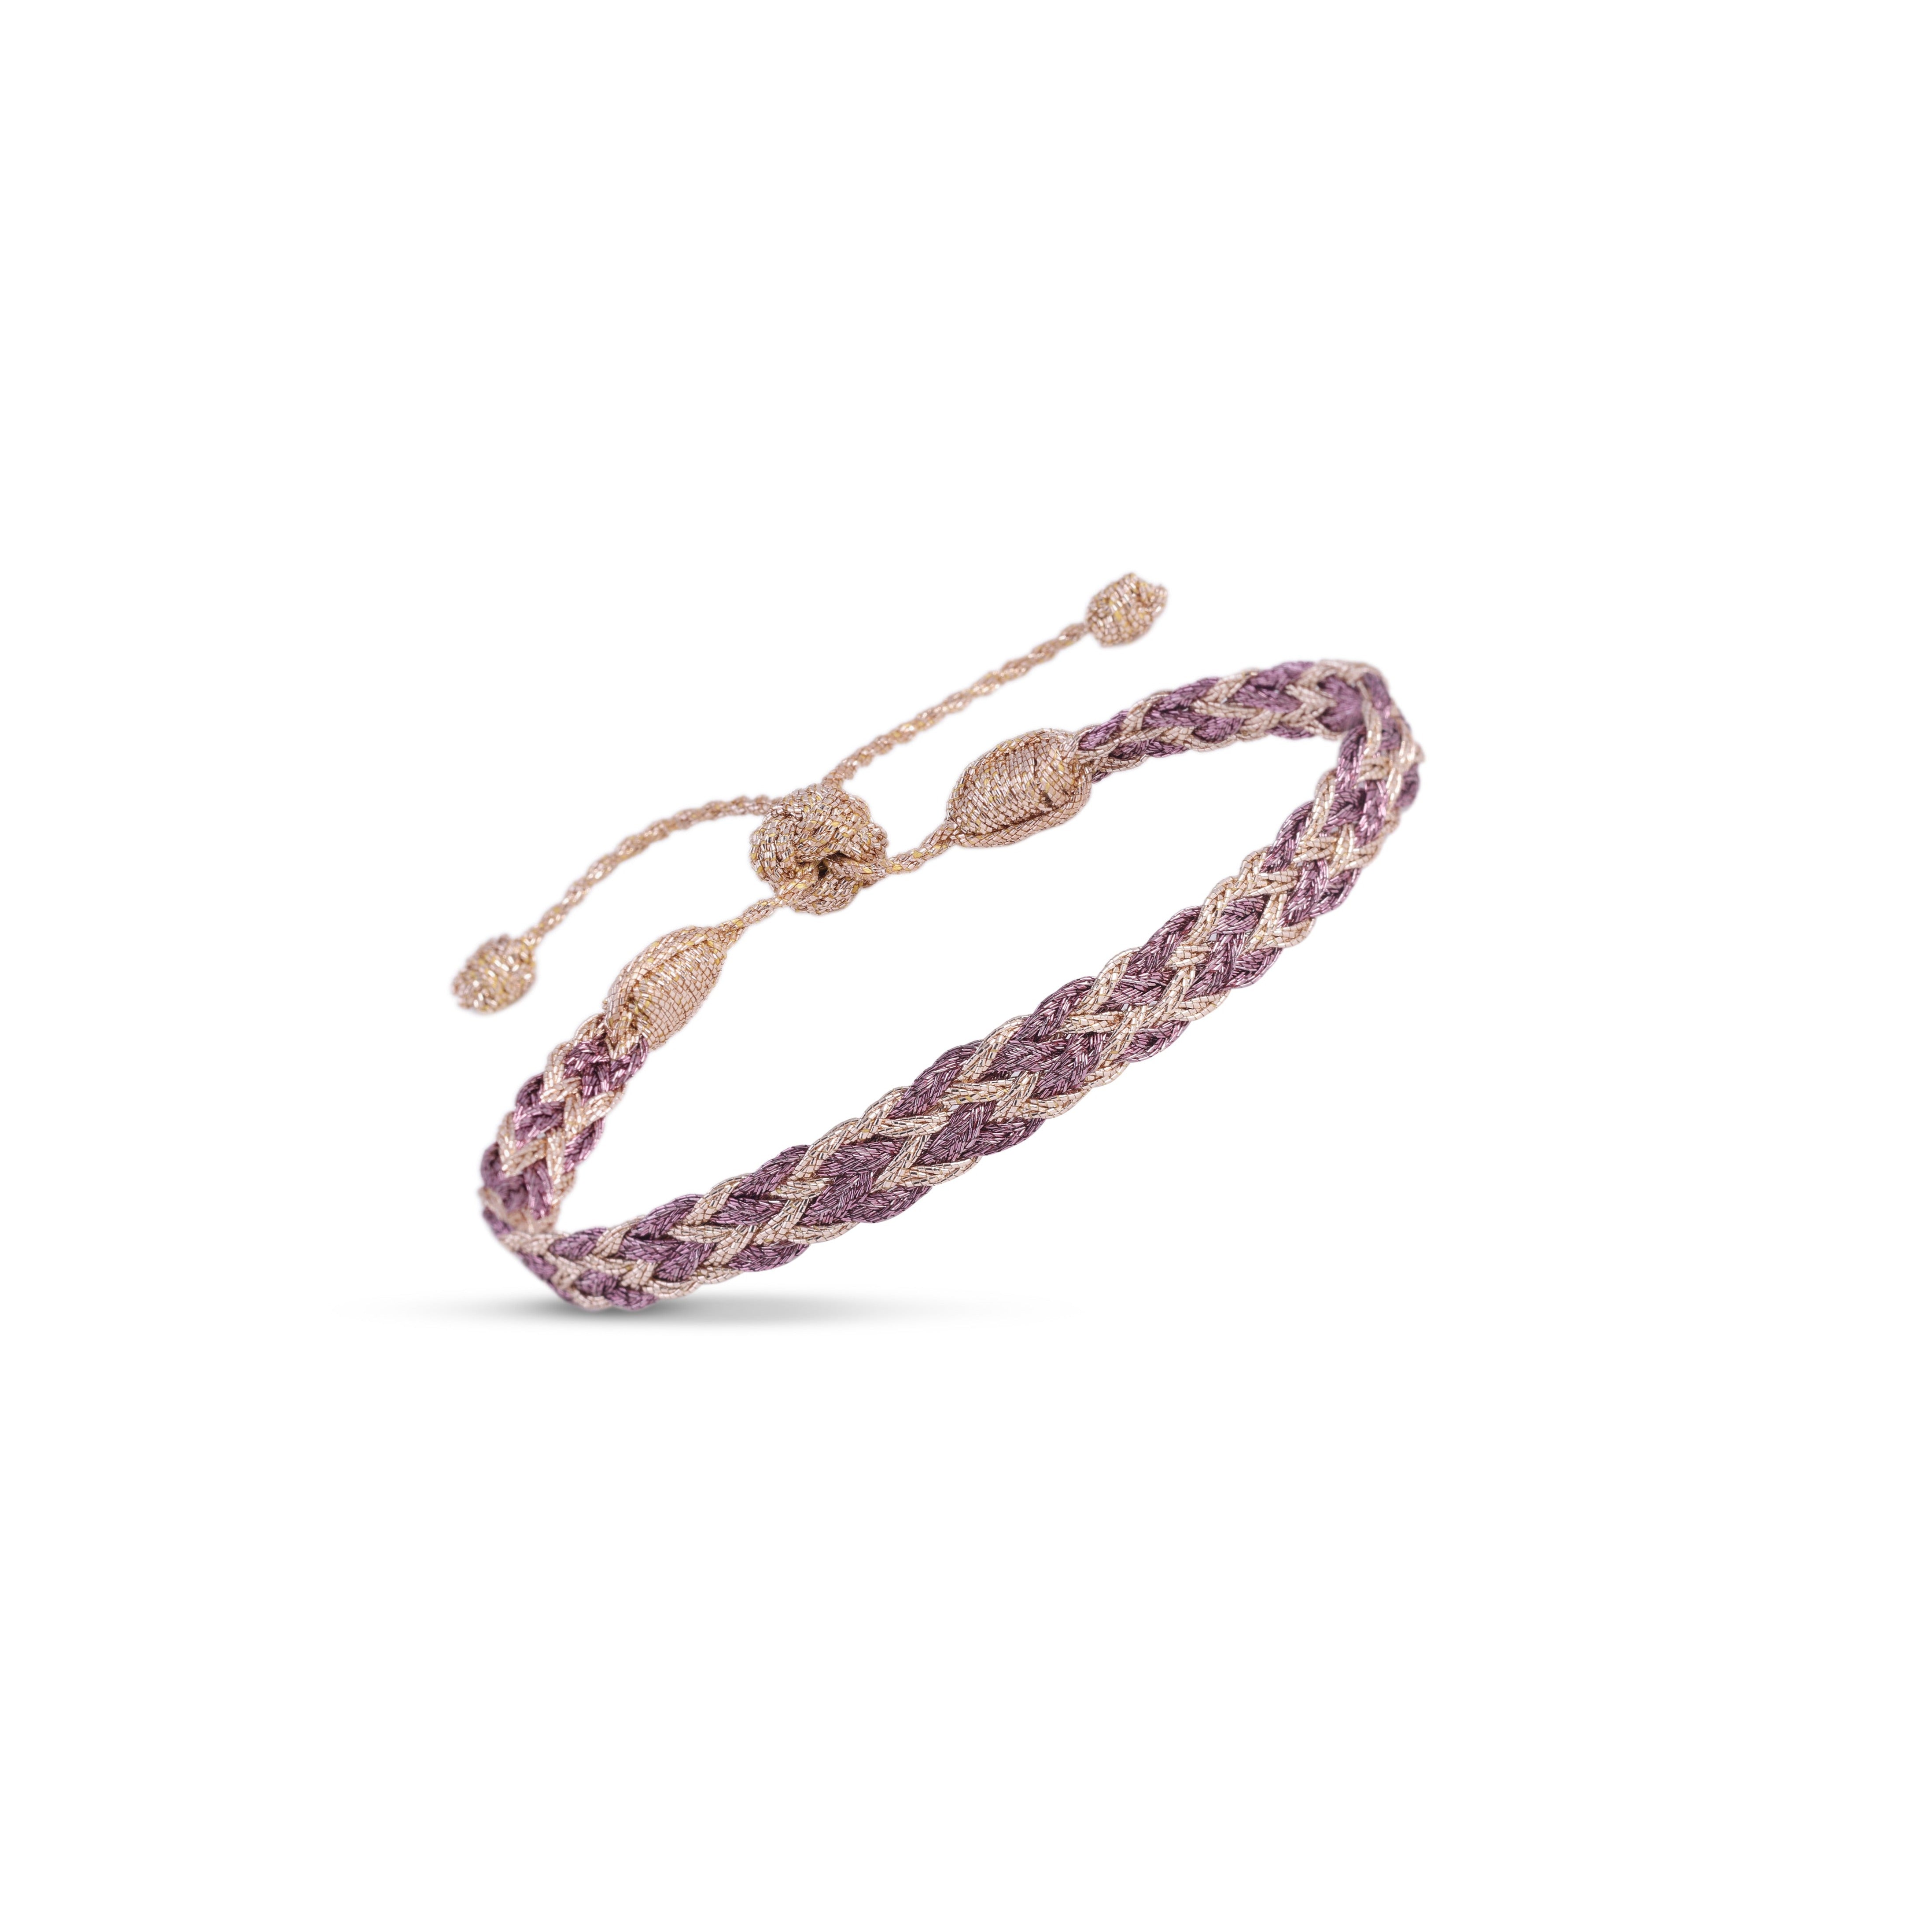 Zyn n°2 Bracelet in Rose Gold Mauve